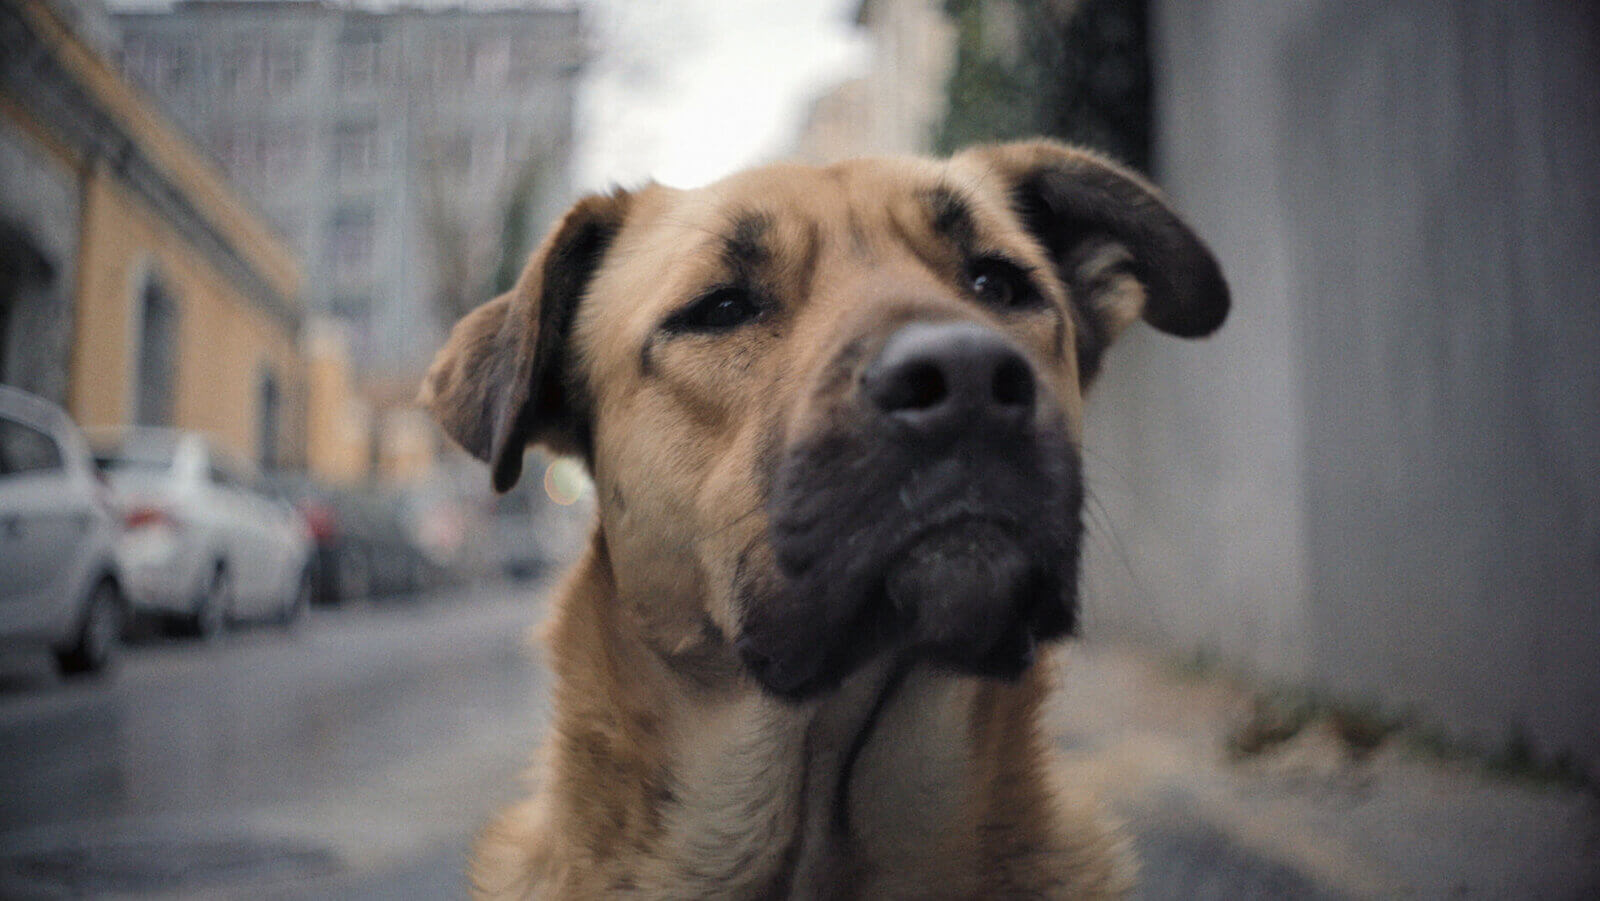 stray-documentary-movie-dog-2020